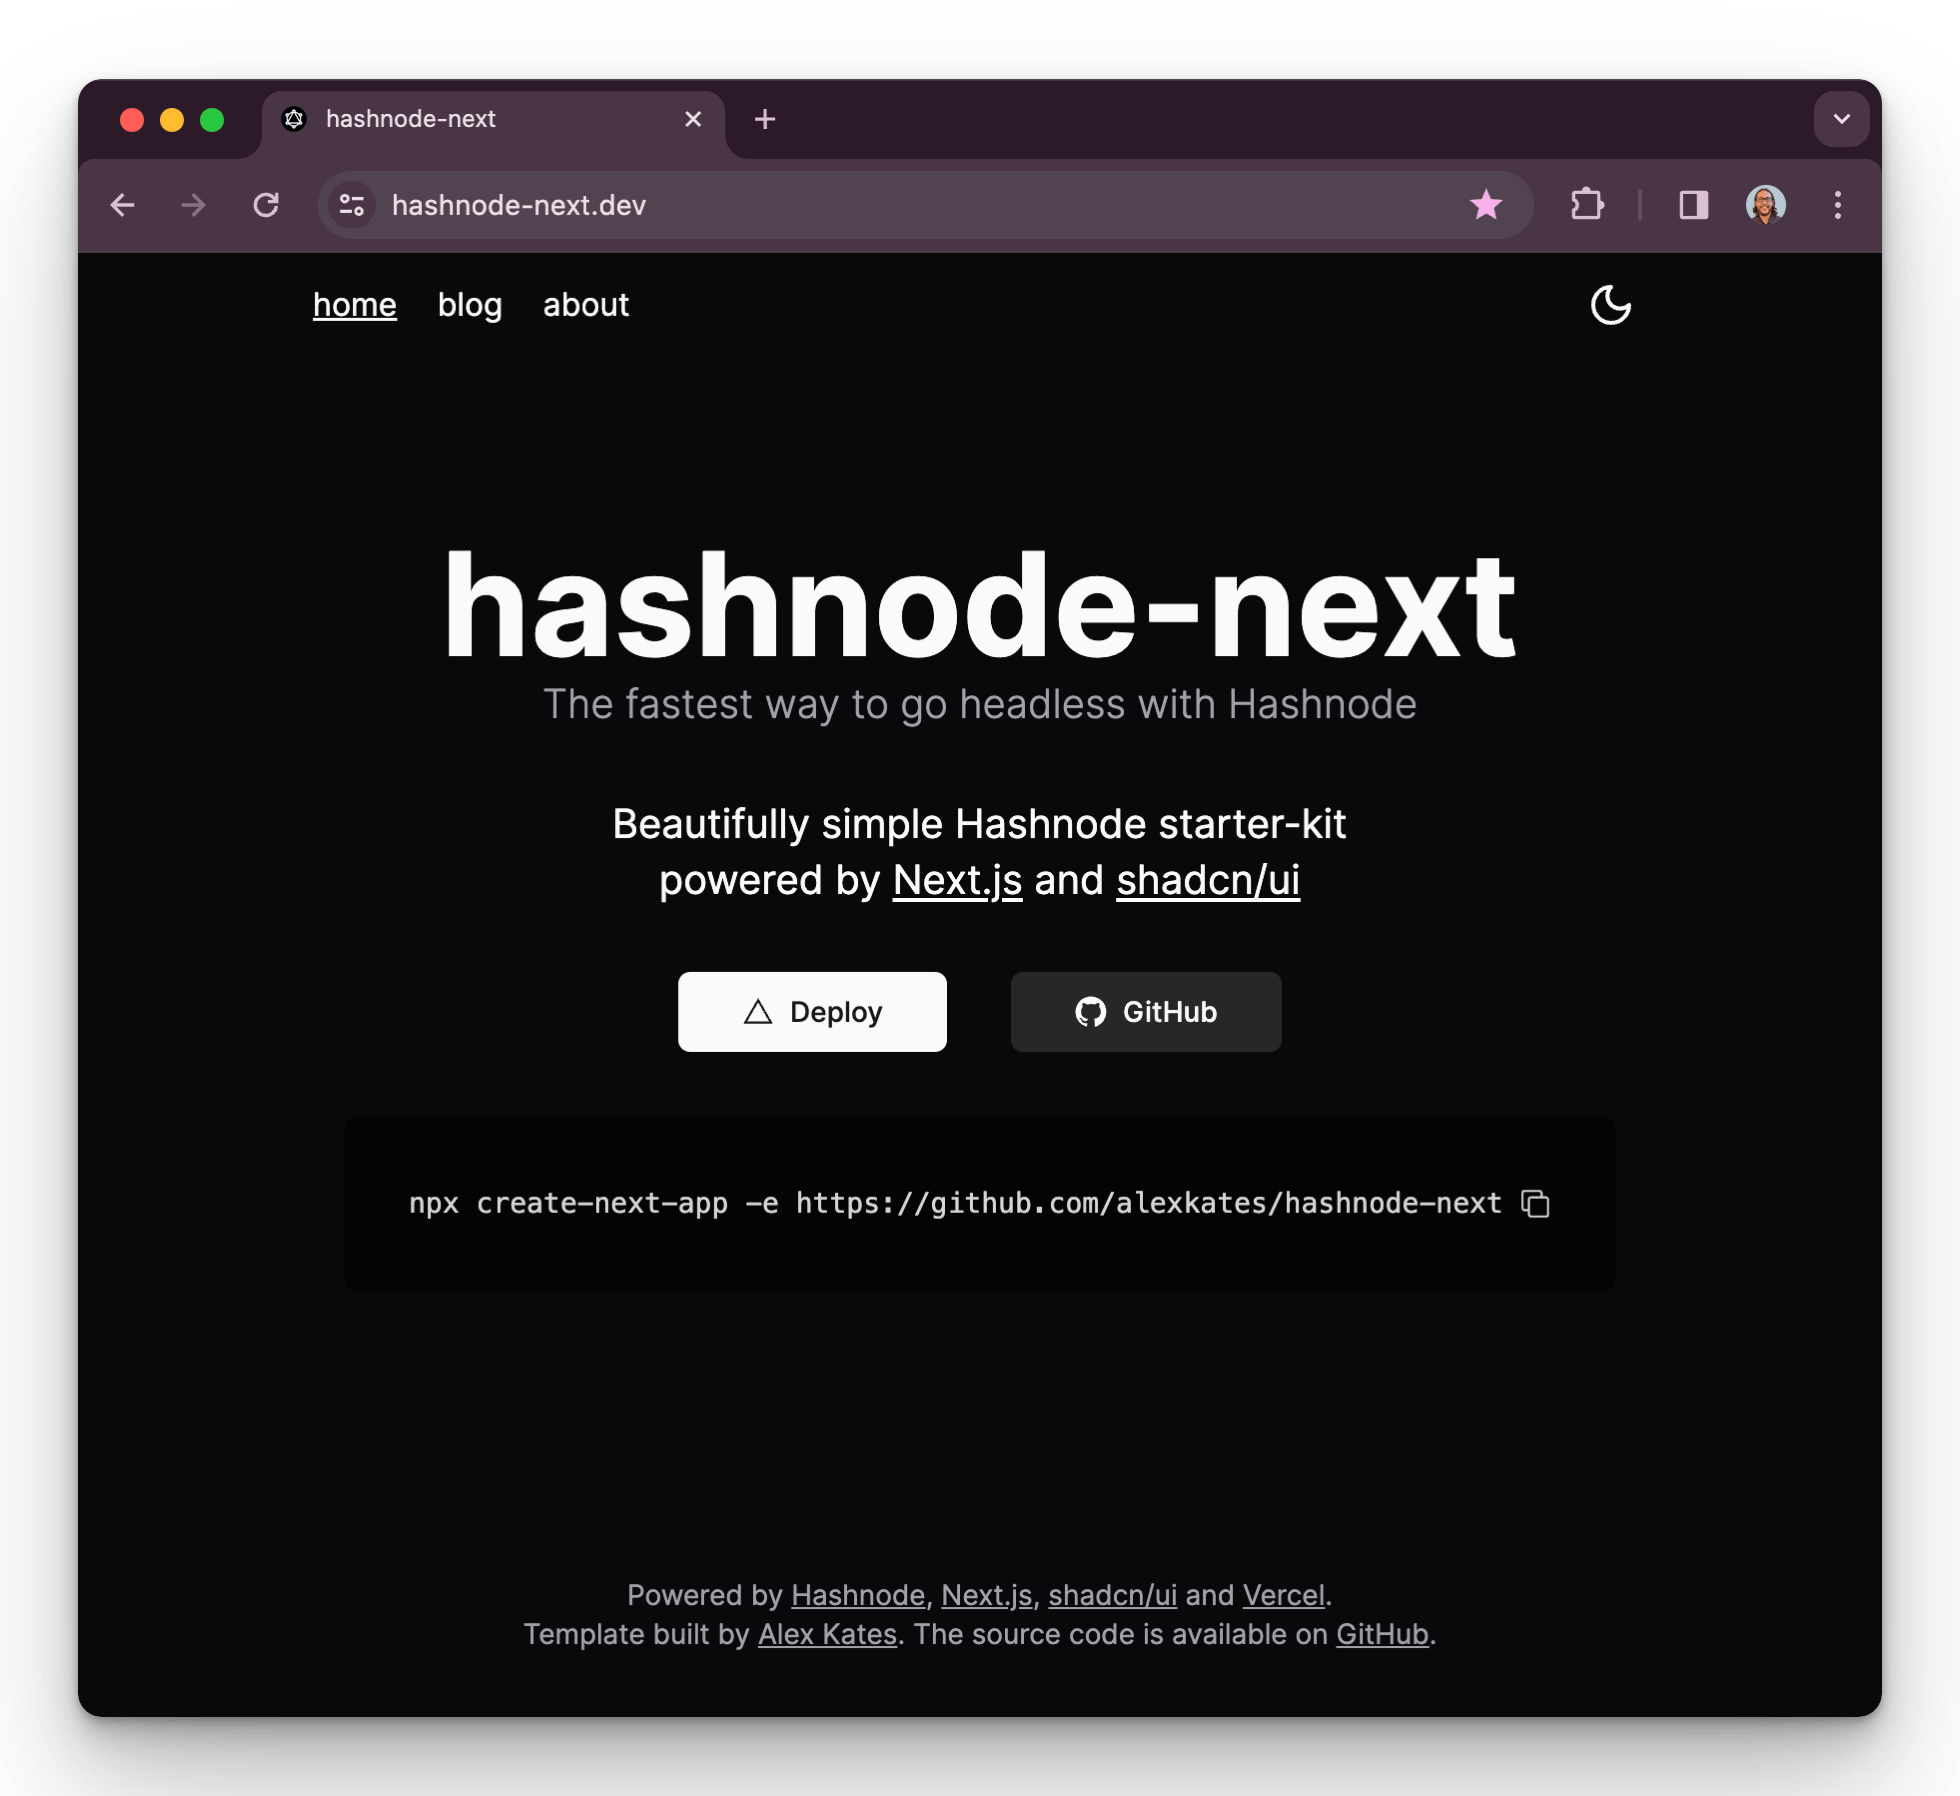 Image of hashnode-next.dev landing page.